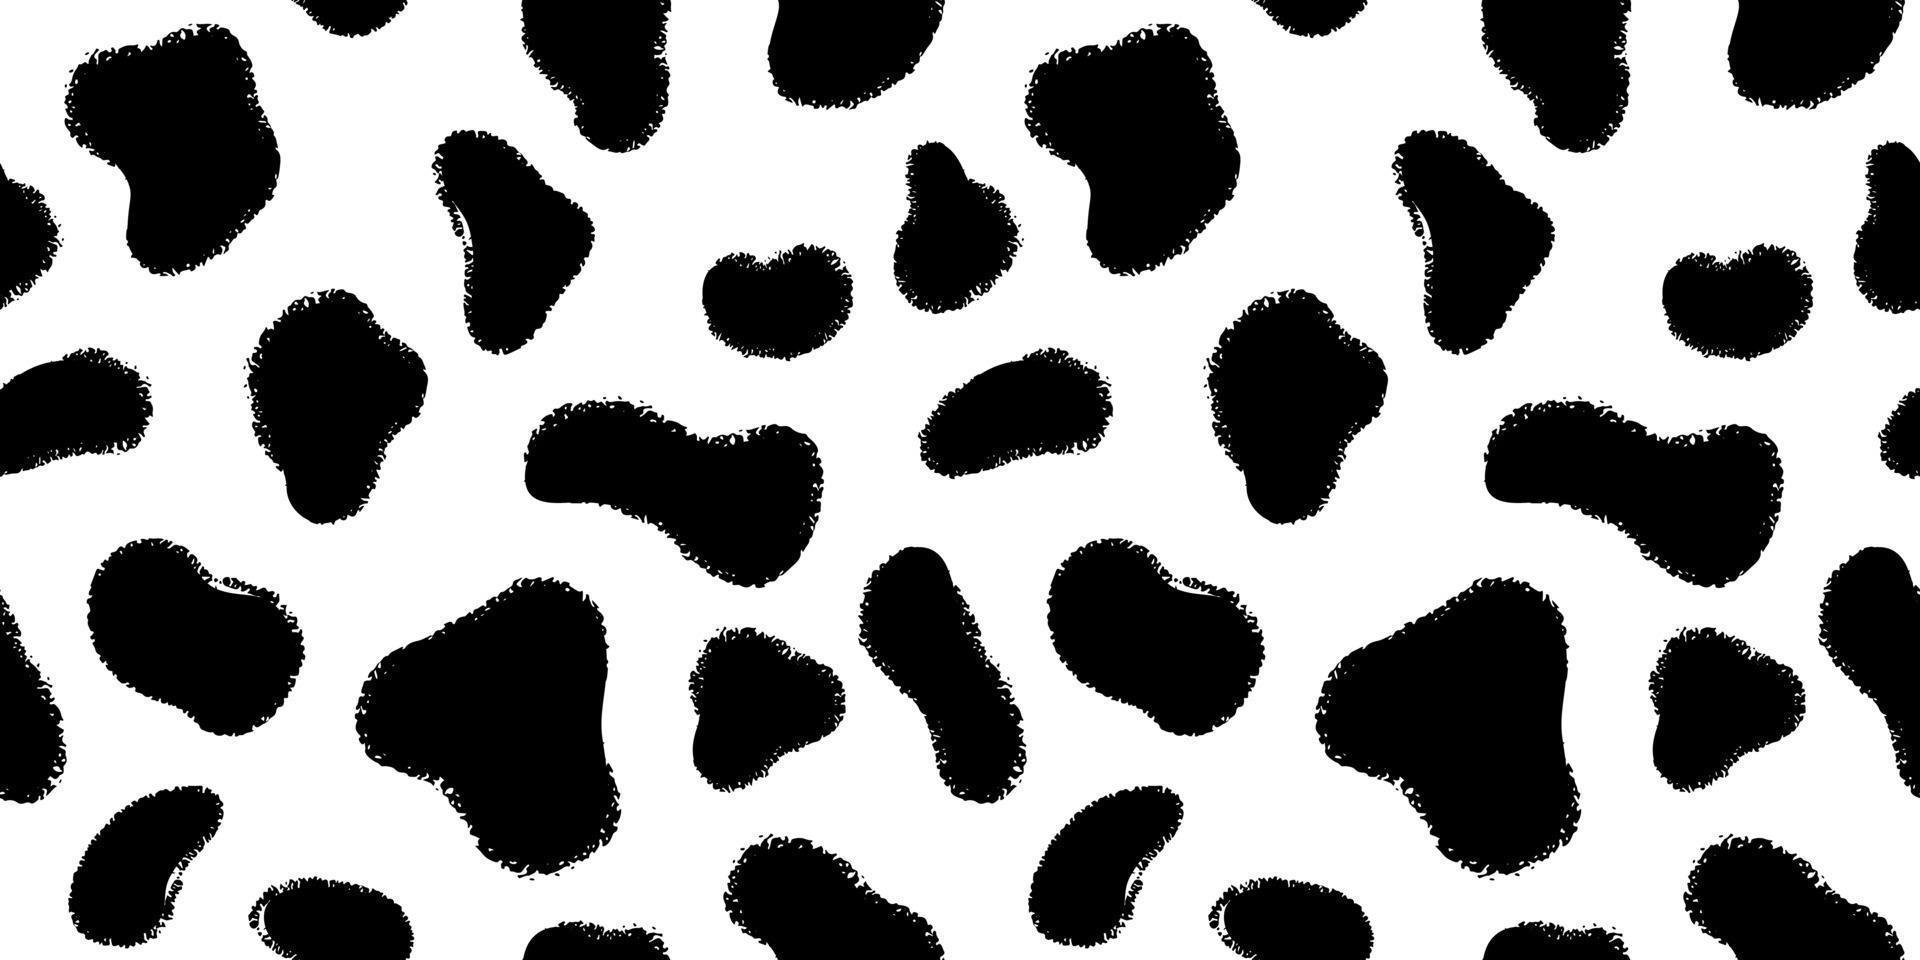 dier huid met zwart inkt hand- getrokken vlekken naadloos patroon. structuur vacht hond dalmatiër of koe vector illustratie.